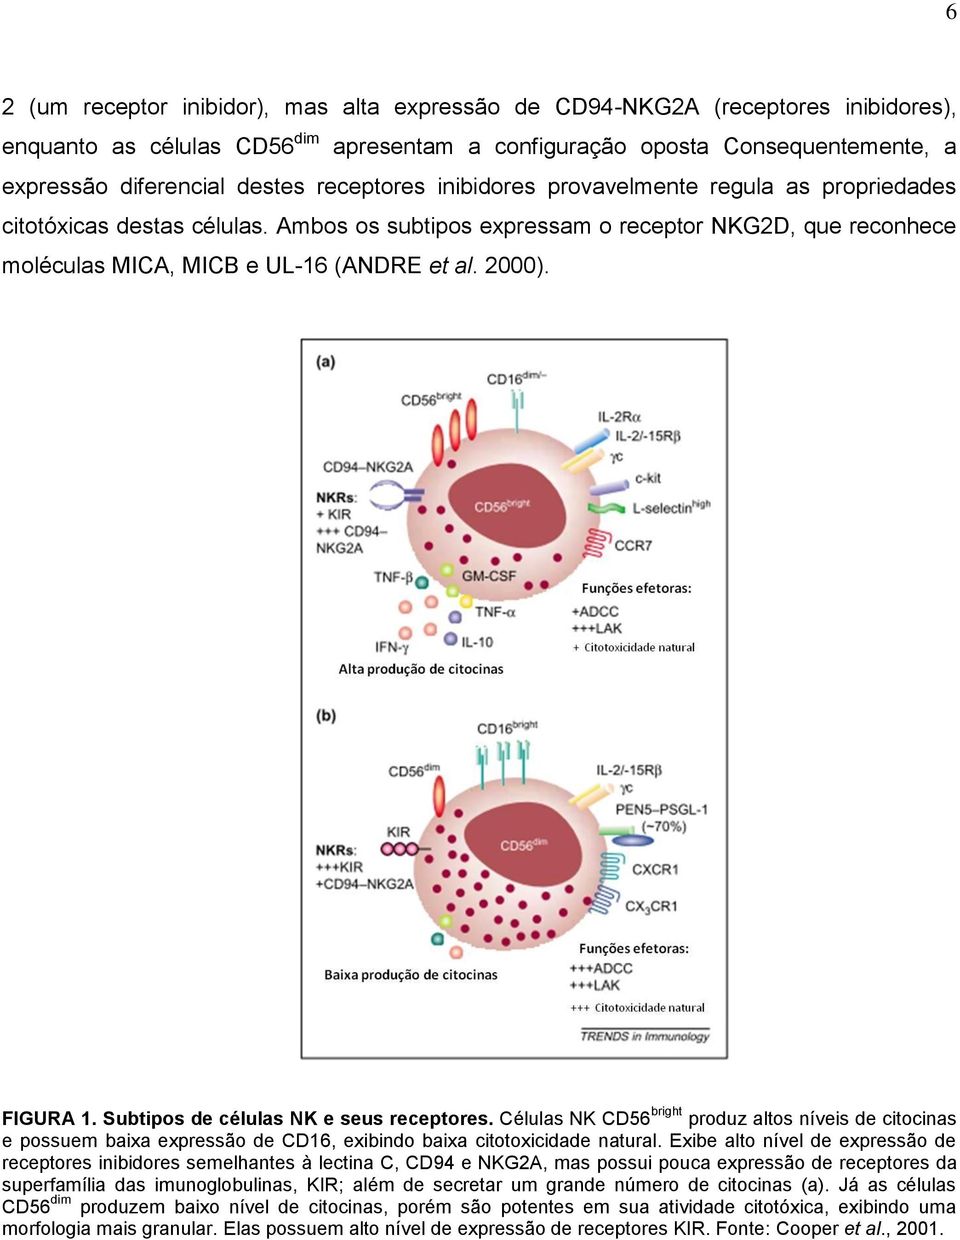 FIGURA 1. Subtipos de células NK e seus receptores. Células NK CD56 bright produz altos níveis de citocinas e possuem baixa expressão de CD16, exibindo baixa citotoxicidade natural.